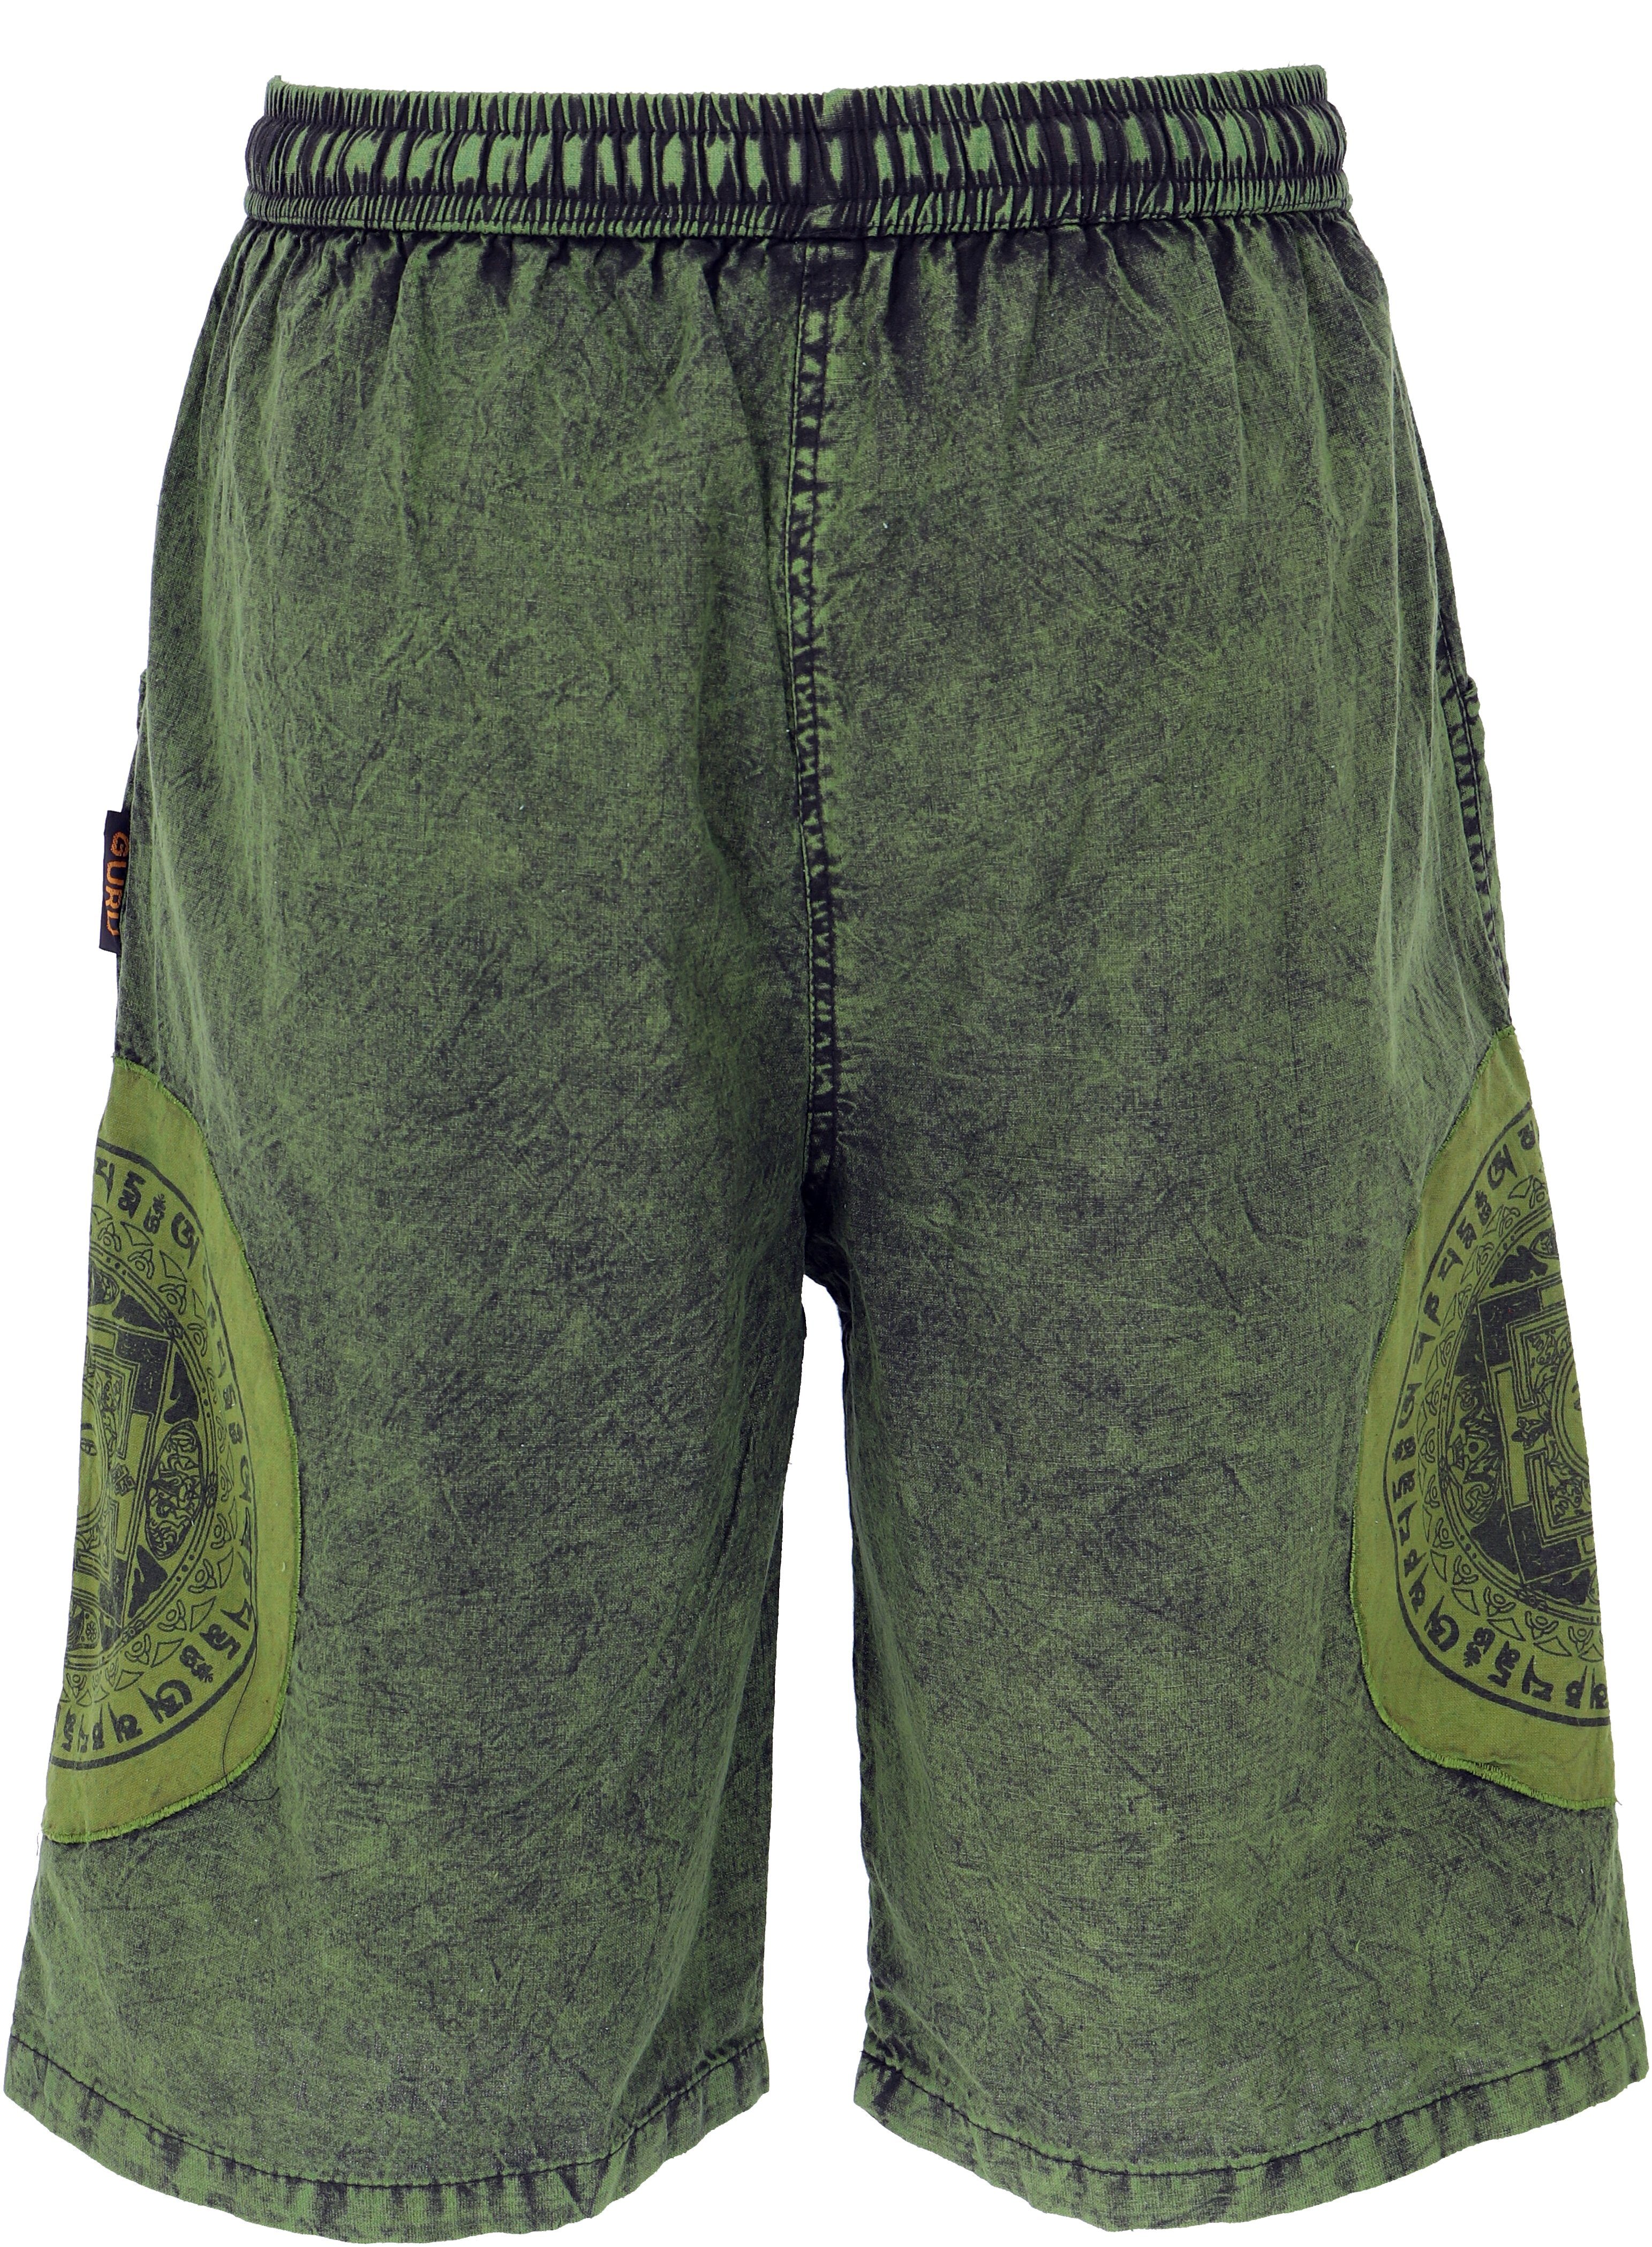 Yogashorts, Ethno Shorts.. alternative Stonwasch Guru-Shop Style, Hippie, grün Bekleidung Relaxhose Ethno Patchwork